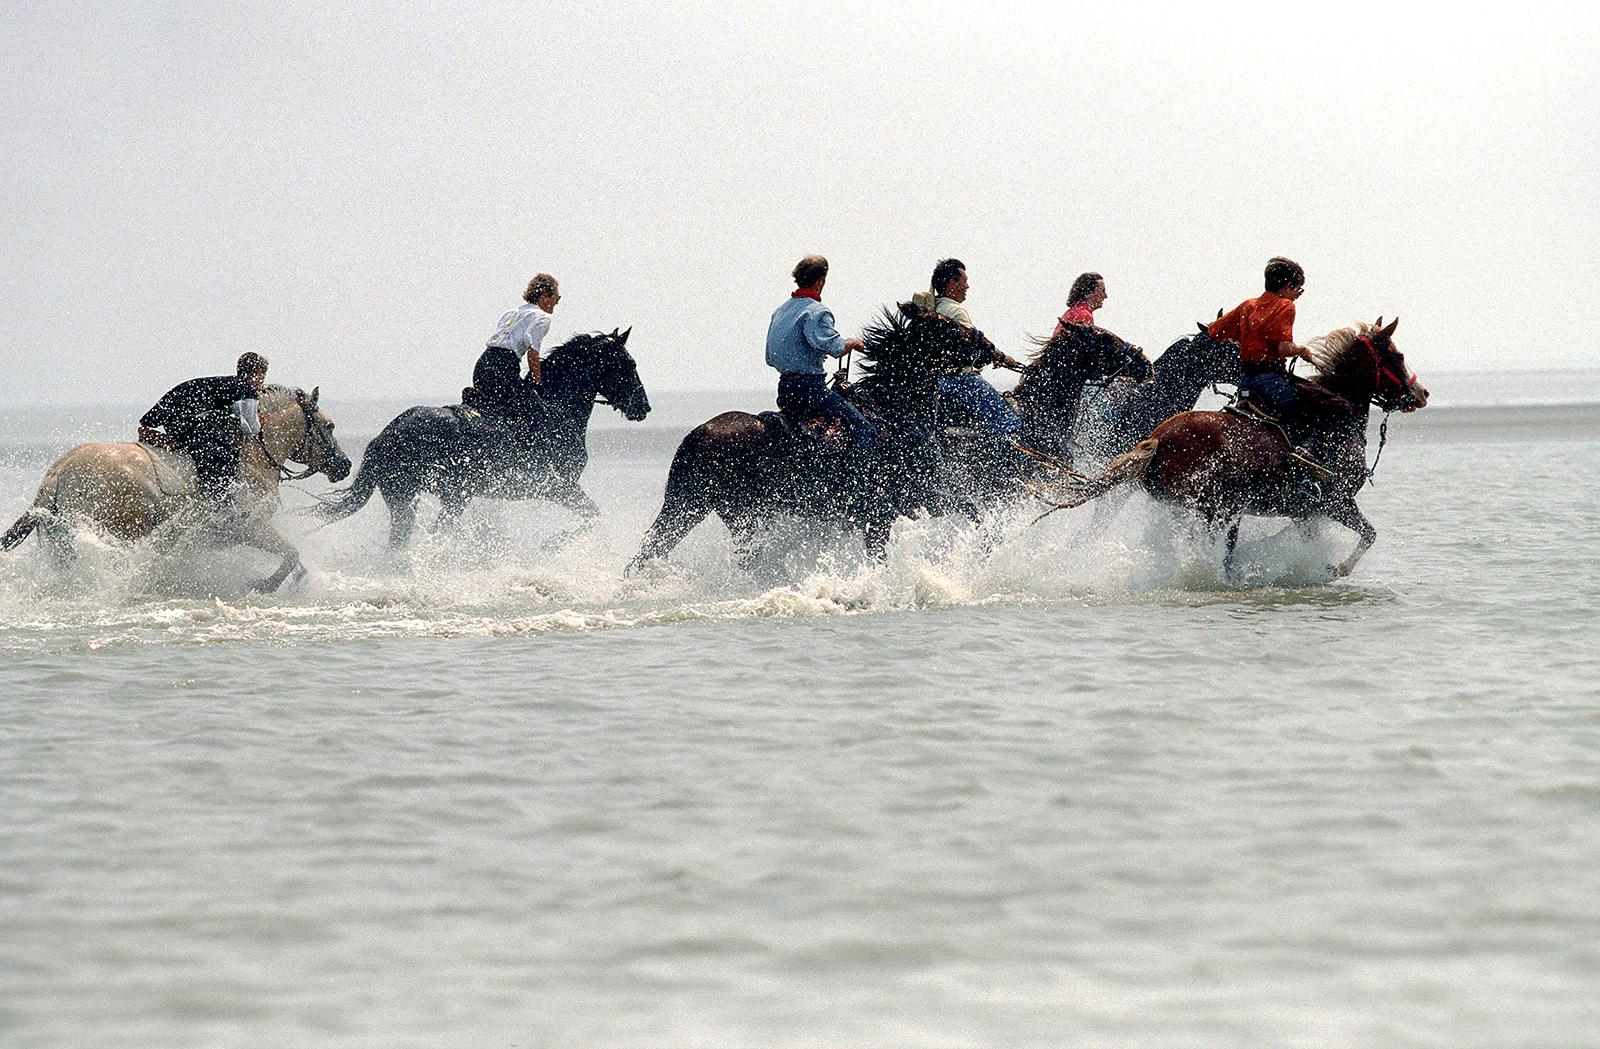 Équitation de chevaux - Photographie en couleur, tirage limité, course à la marée montante